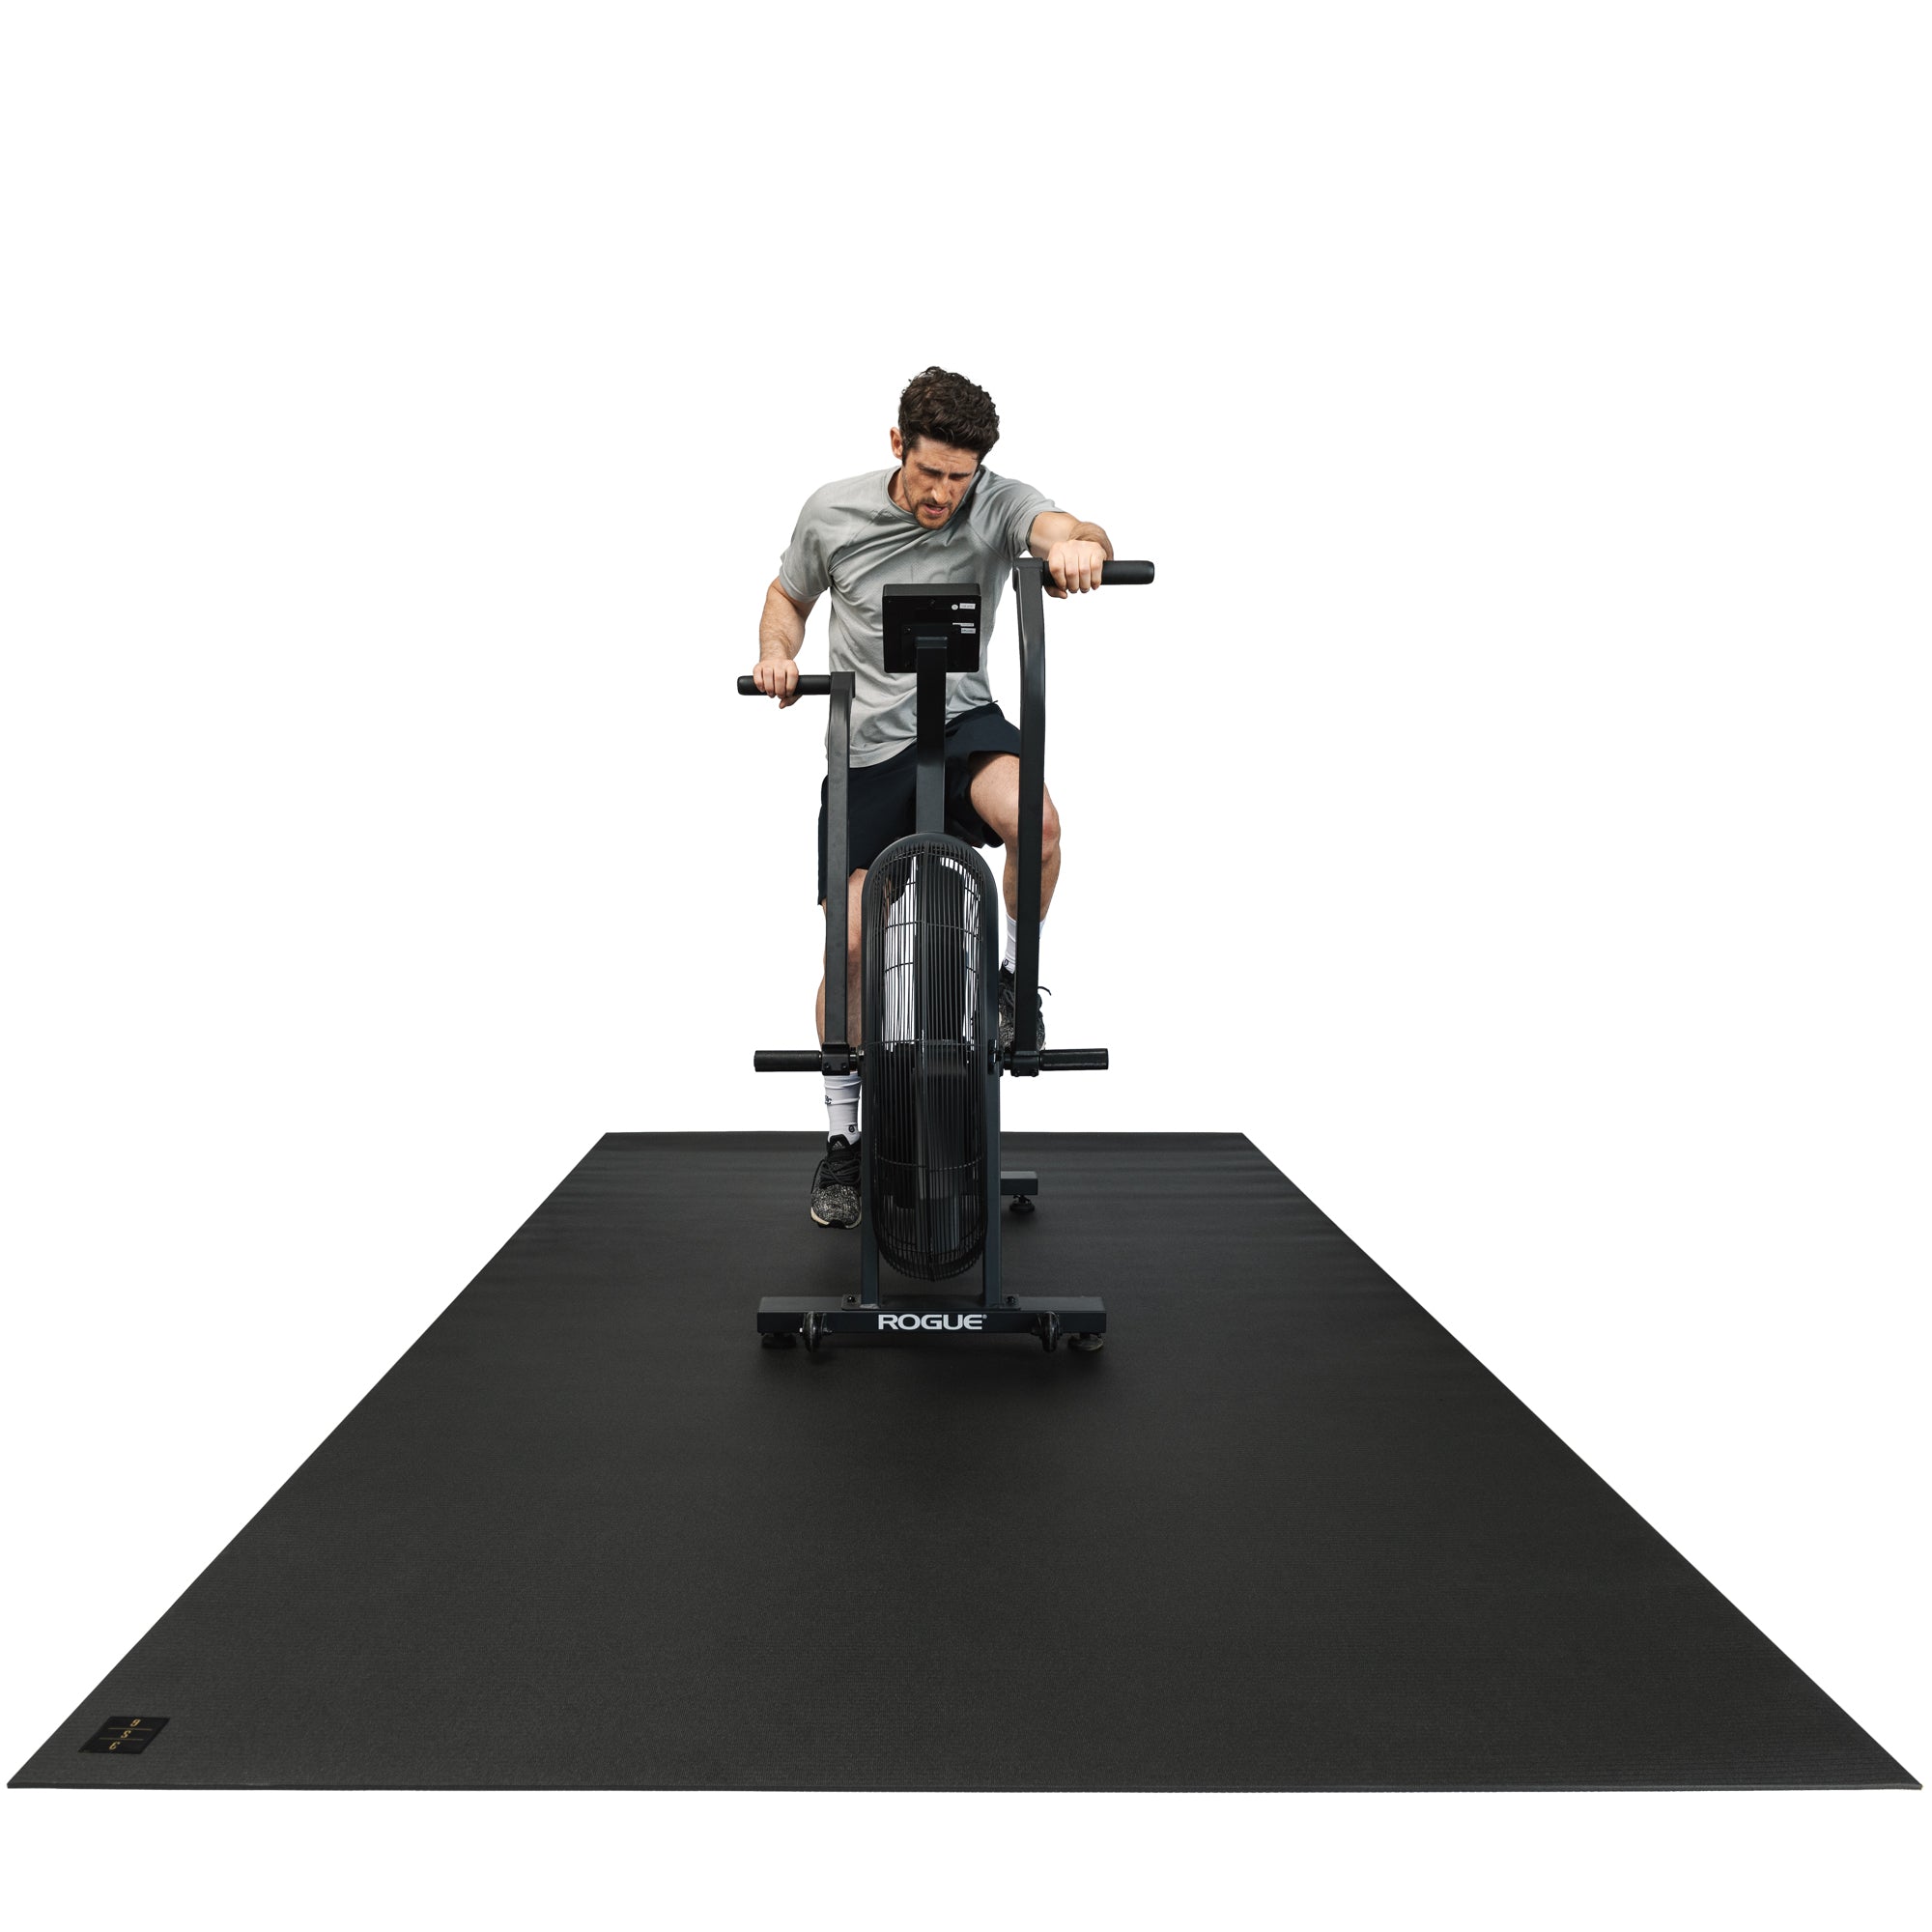 Square36 Premium Large Exercise & Fitness Equipment Mat